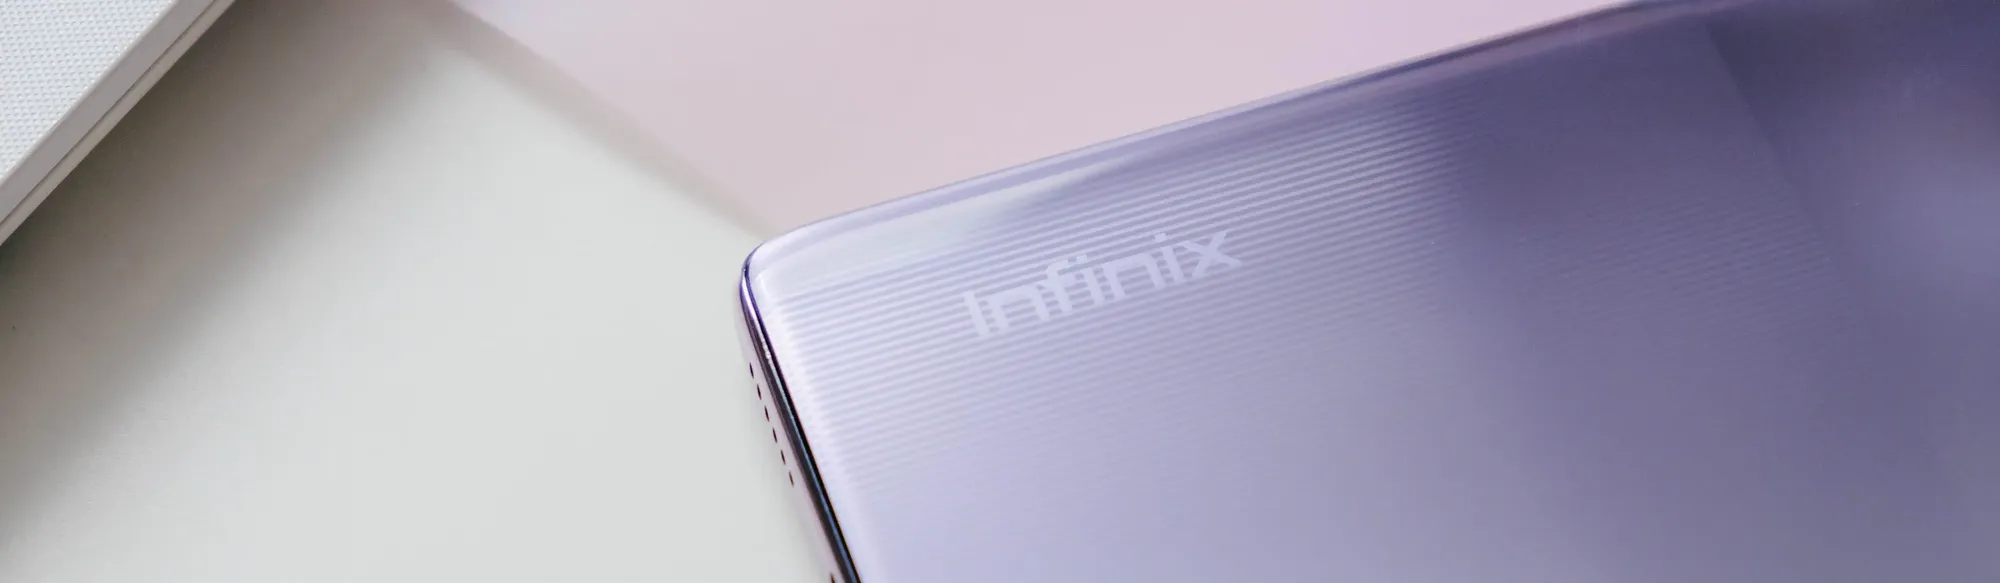 Smartphone INFINIX Free Fire Limited Edition 128GB Câmera Tripla até 50 MP  5000 mAh Tela 6,78” de 90 Hz FullHD Dual Chip até 9GB RAM – Secret Silver -  infinix